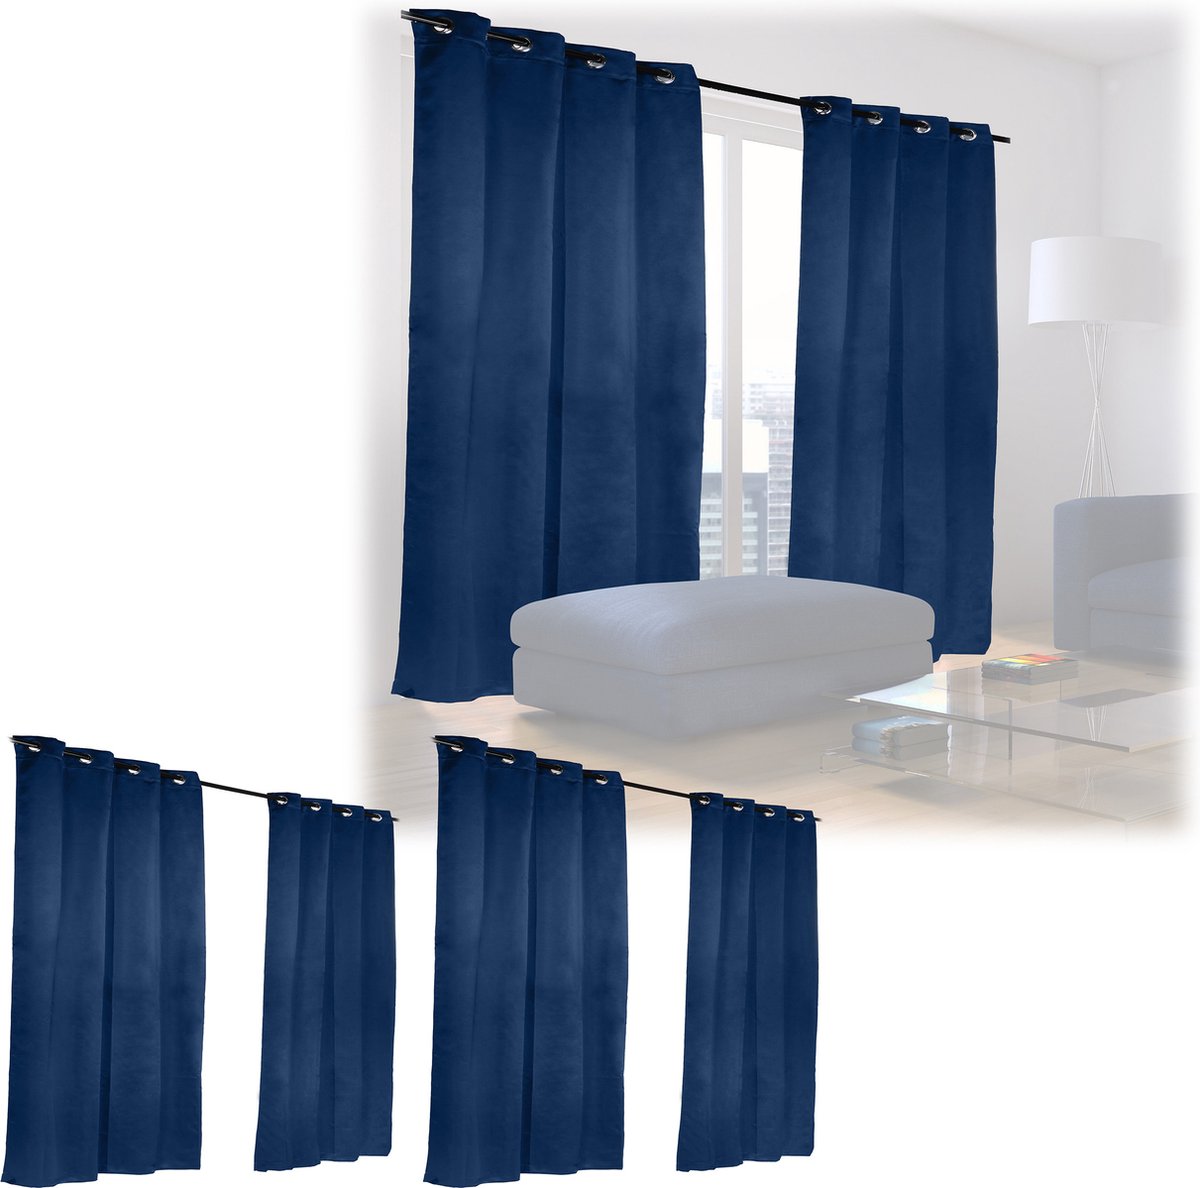 Relaxdays 6 x verduisterende gordijnen - blauw - kant en klaar - gordijn set - 175x135 cm